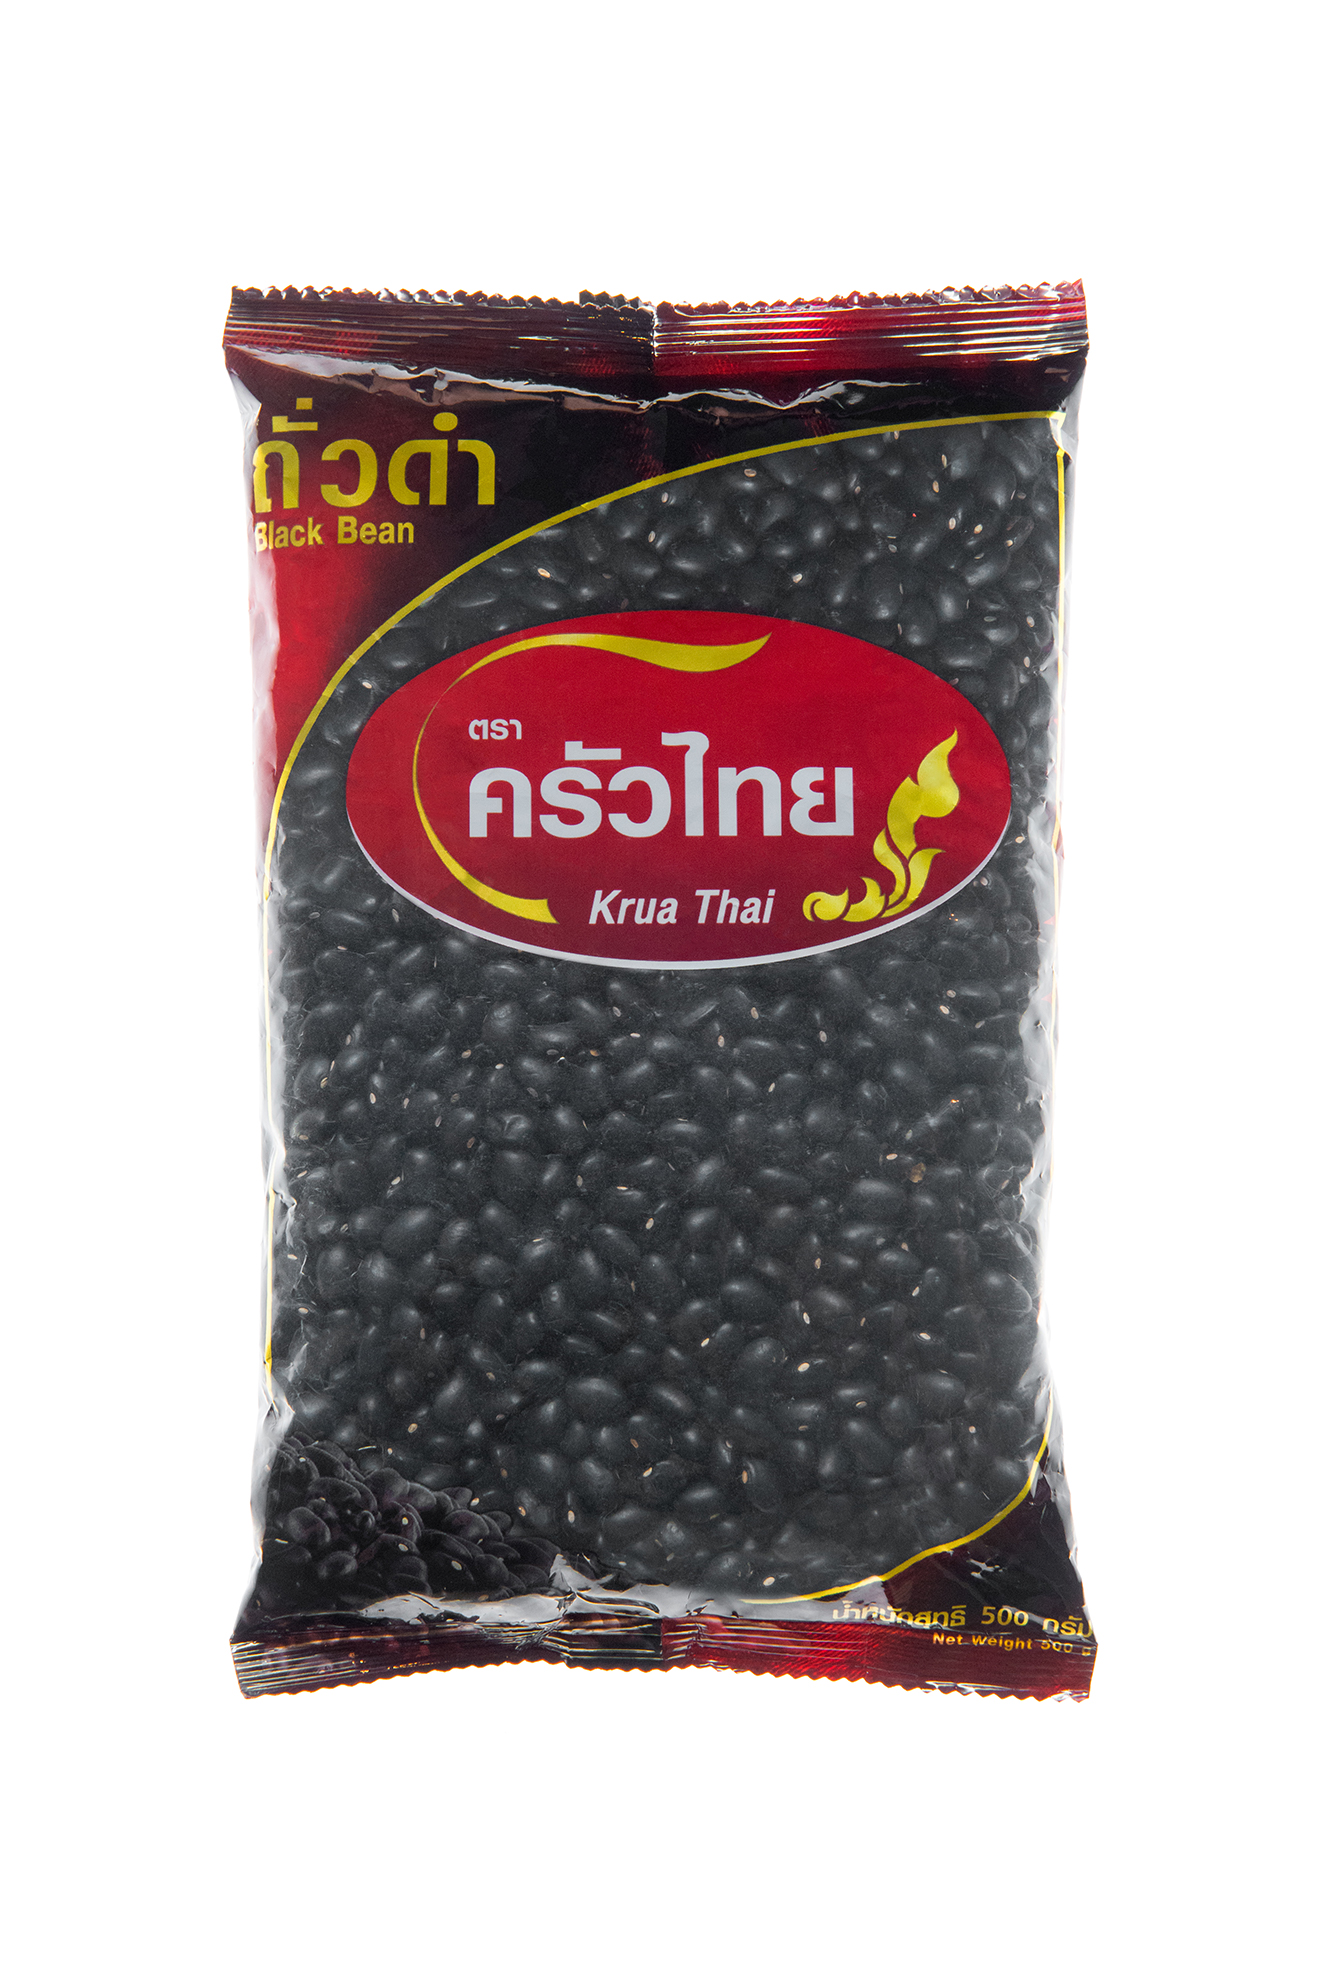 ถั่วดำครัวไทย 500 กรัม / Black bean 500 g.